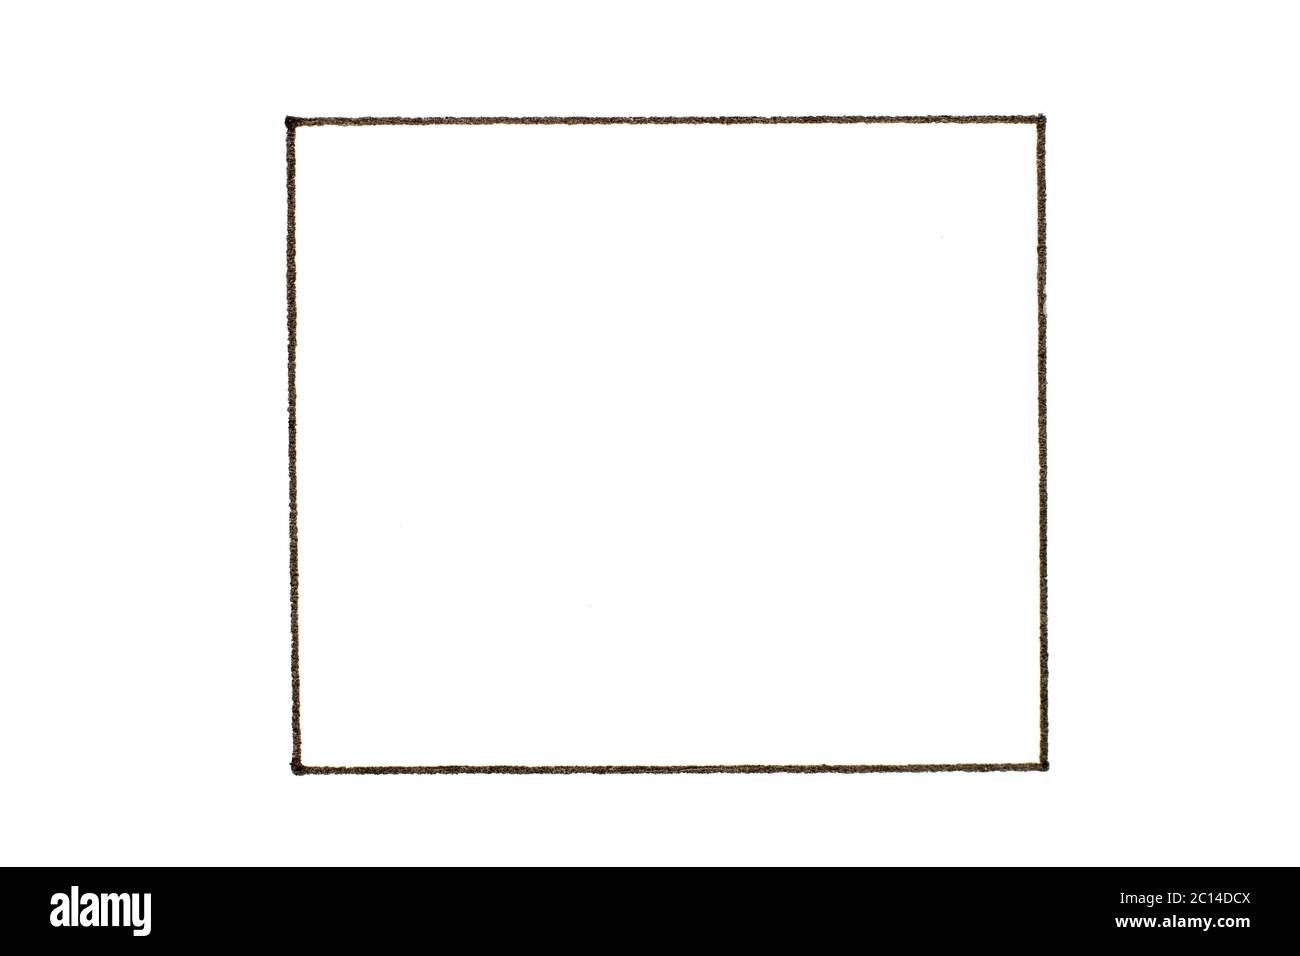 Bạn đang tìm kiếm một mẫu đường viền đen trong hình vuông trống trên nền giấy trắng thích hợp cho việc thiết kế văn bản hay bìa sách của mình? Hãy xem ngay hình ảnh liên quan đến từ khóa này. Với nền trắng đơn giản và đường viền đen sắc nét, bạn có thể tạo ra các thiết kế văn bản đẹp mắt và thu hút khách hàng.